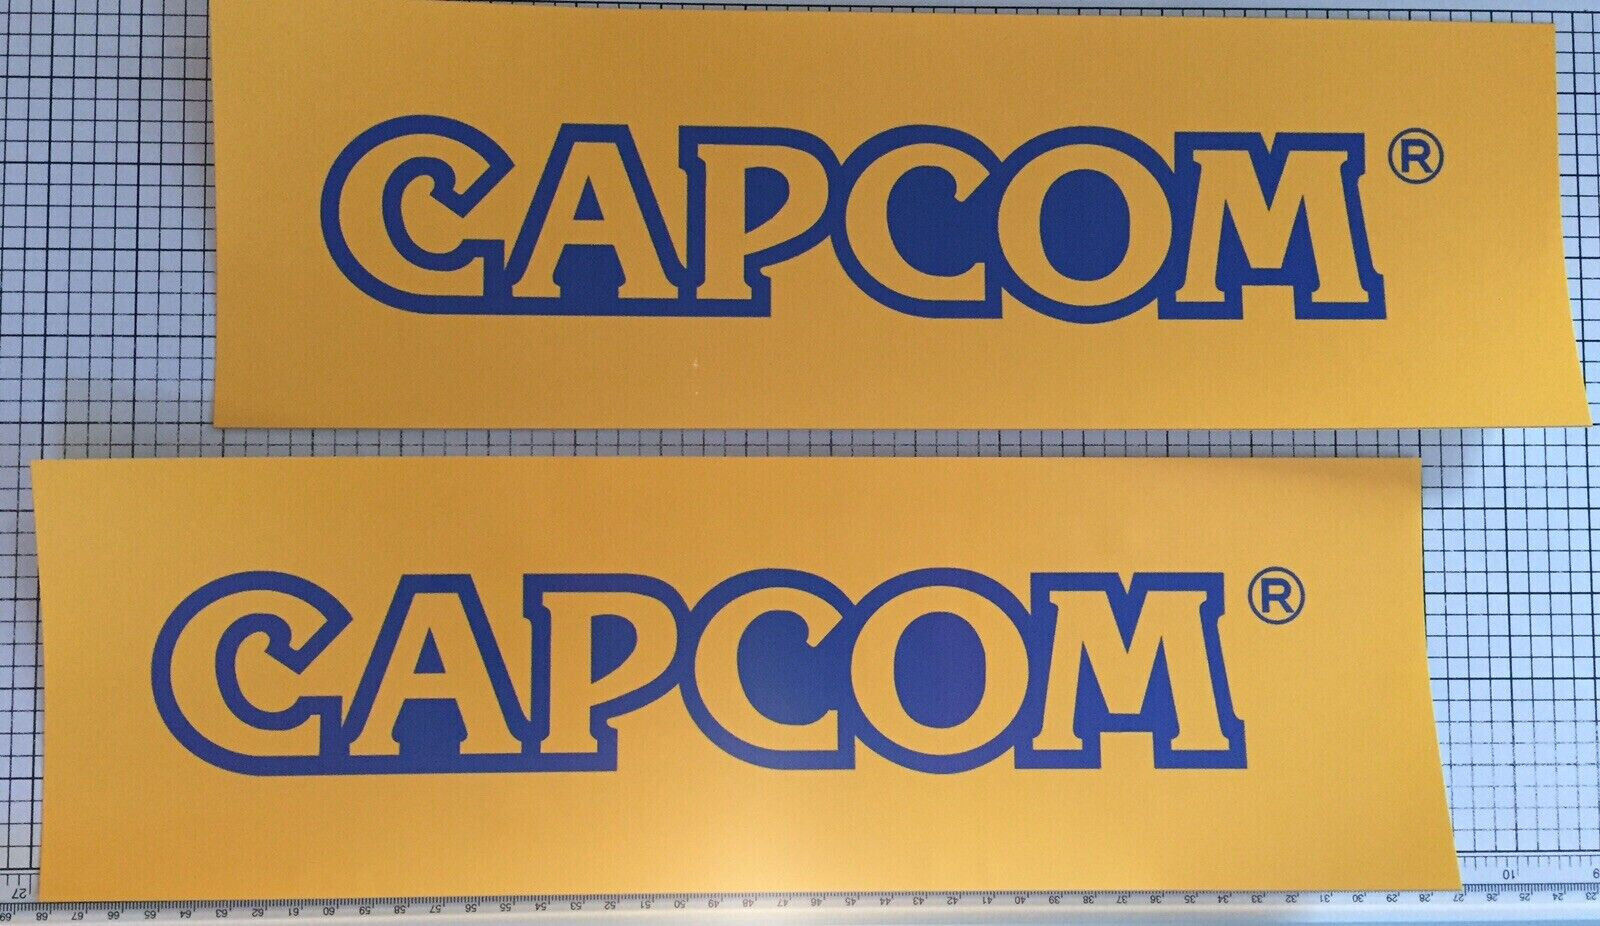 Capcom Arcade Side Art Sticker Pair 11.5” x 6.5”